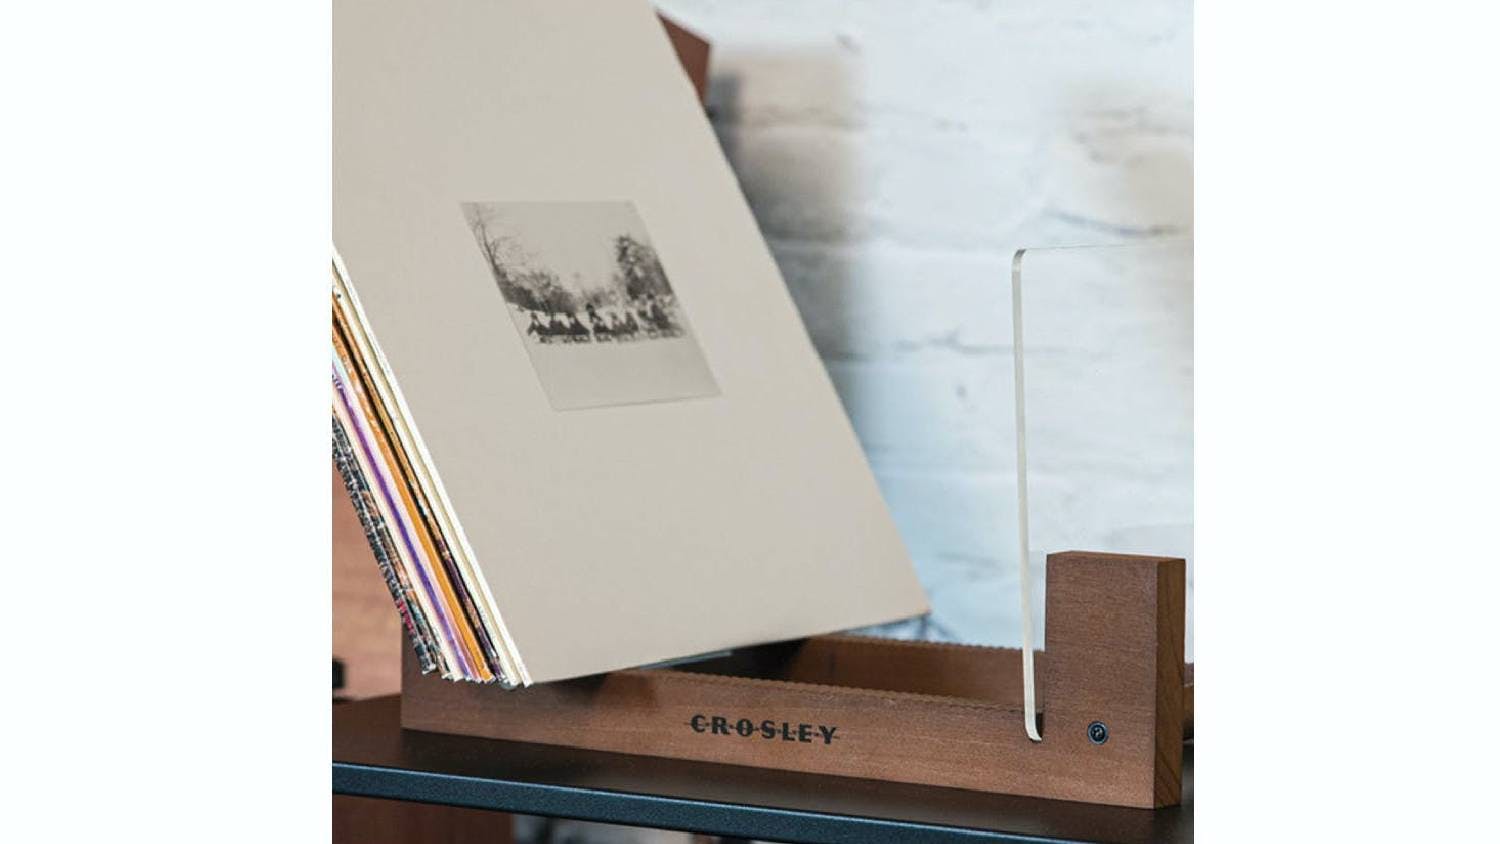 Crosley Record Storage Display Stand w/ The Beatles - Yellow Submarine Vinyl Album